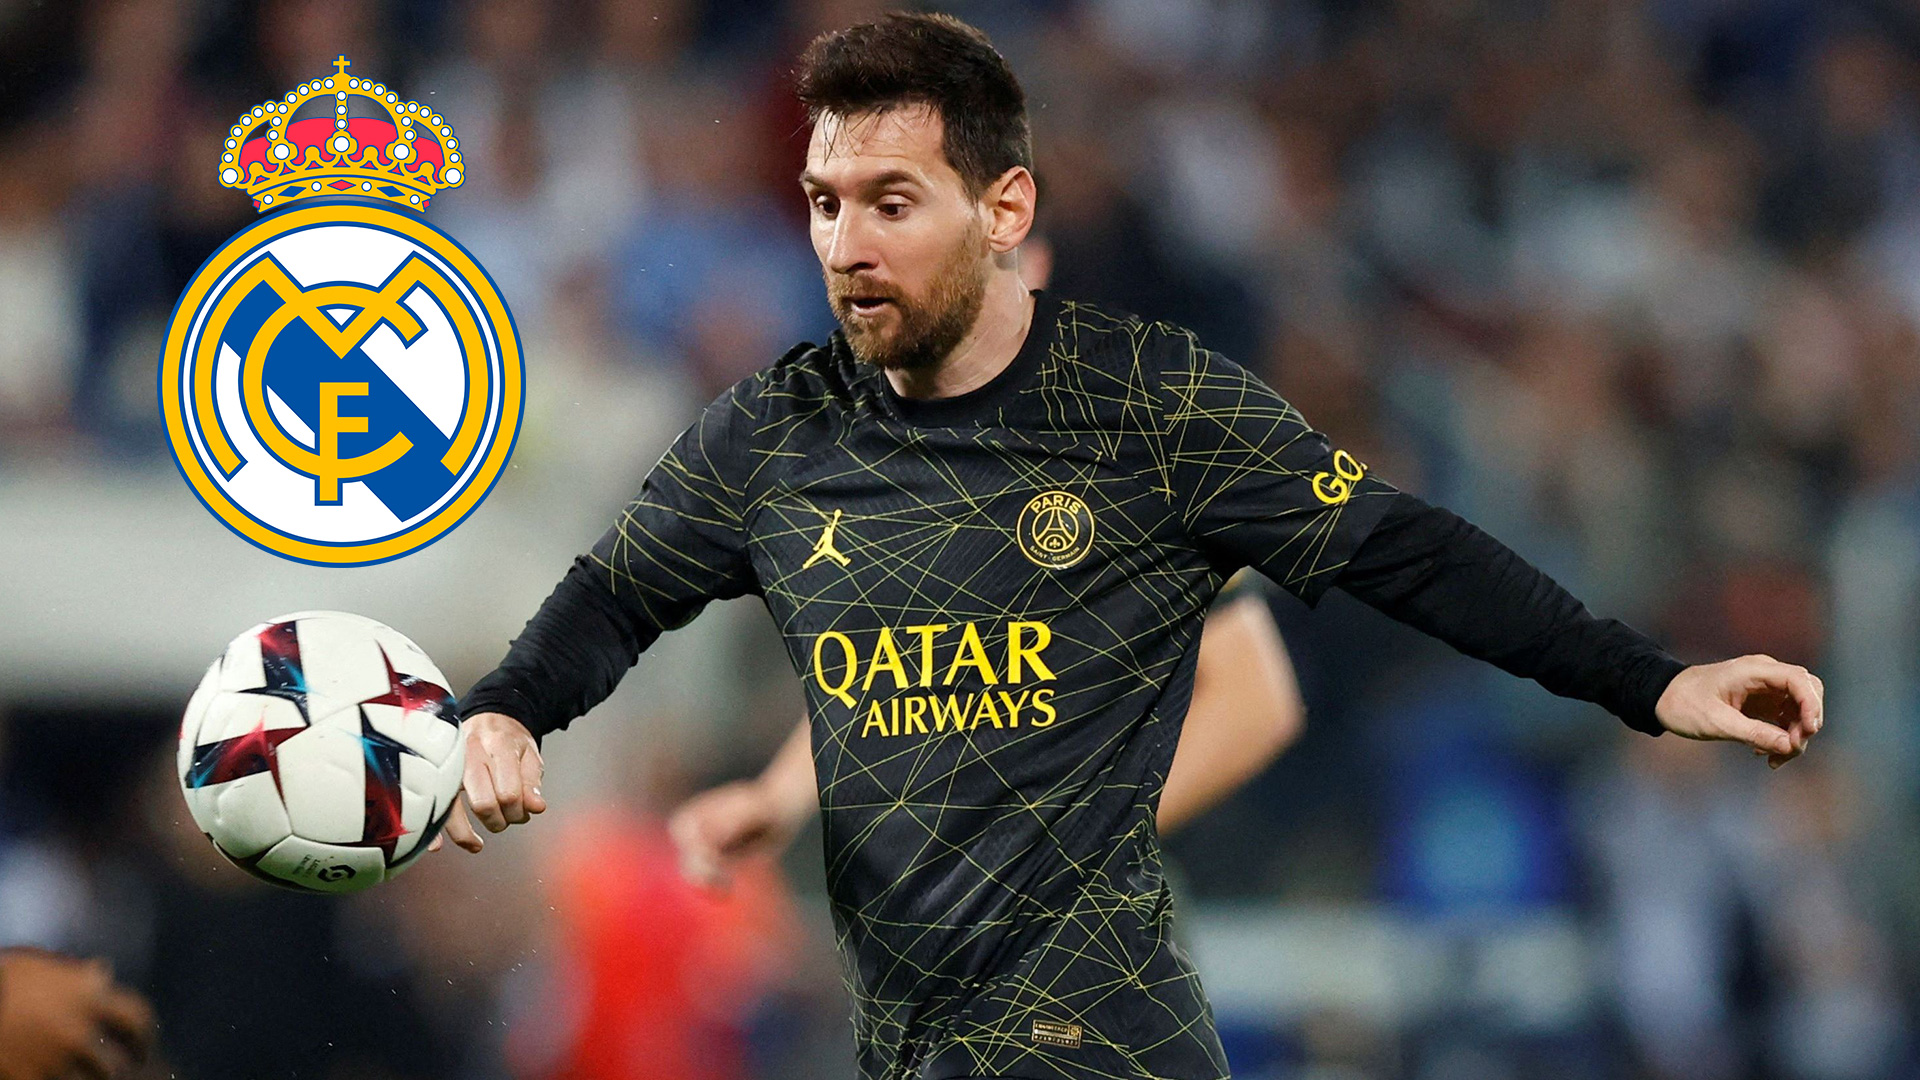 La sorprendente sentencia de un ex presidente del Real Madrid: “Si Messi decidiera venir, lo recibirían con los brazos abiertos” 